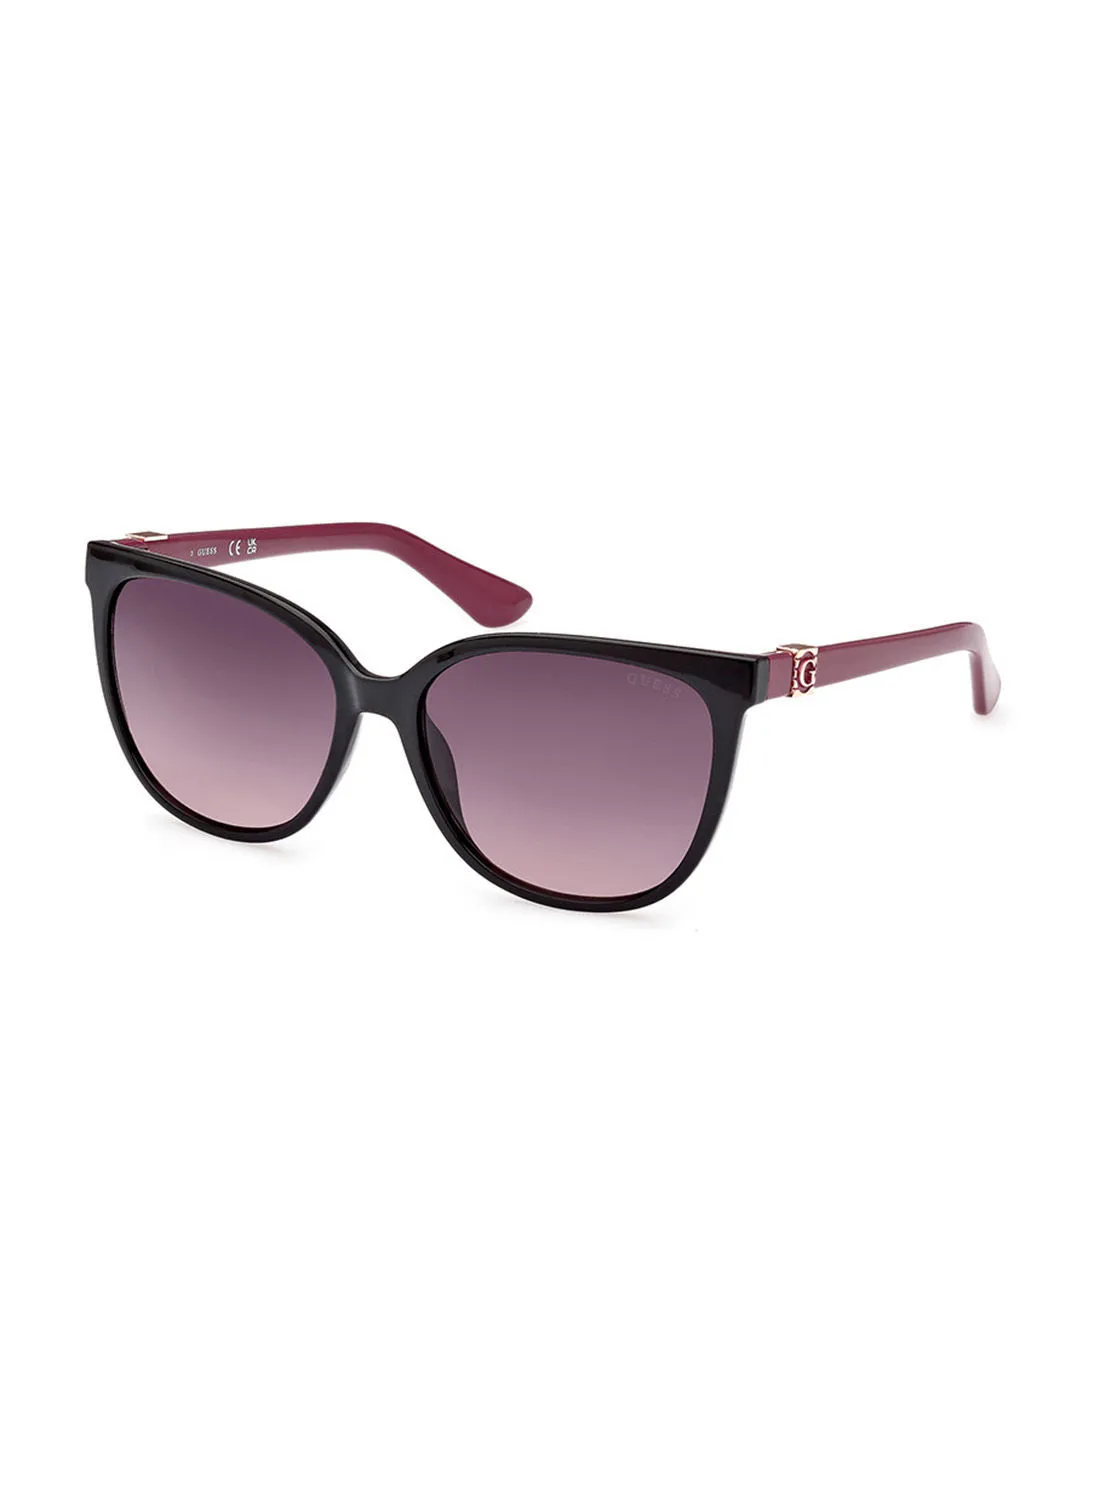 GUESS Sunglasses For Women GU786405B58